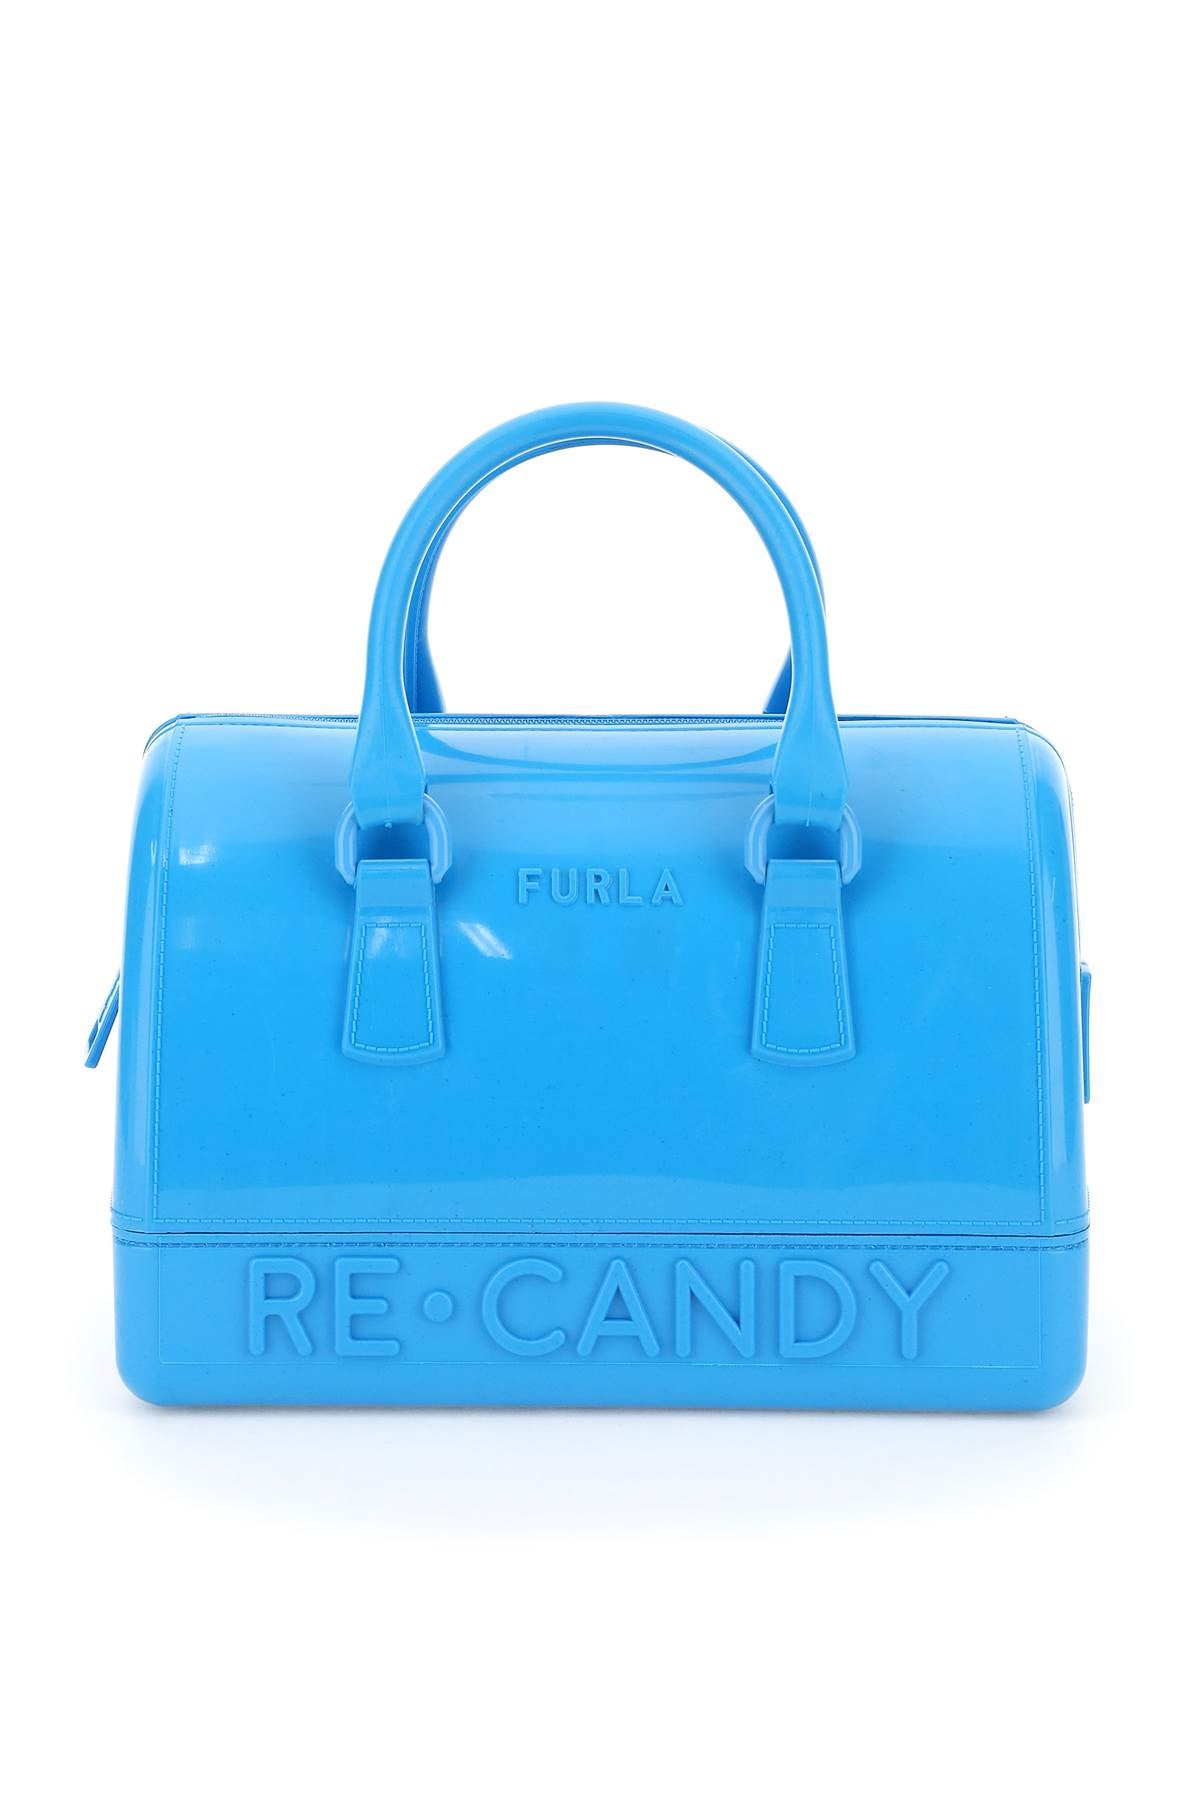 Furla Medium Candy Tote Bag - Farfetch